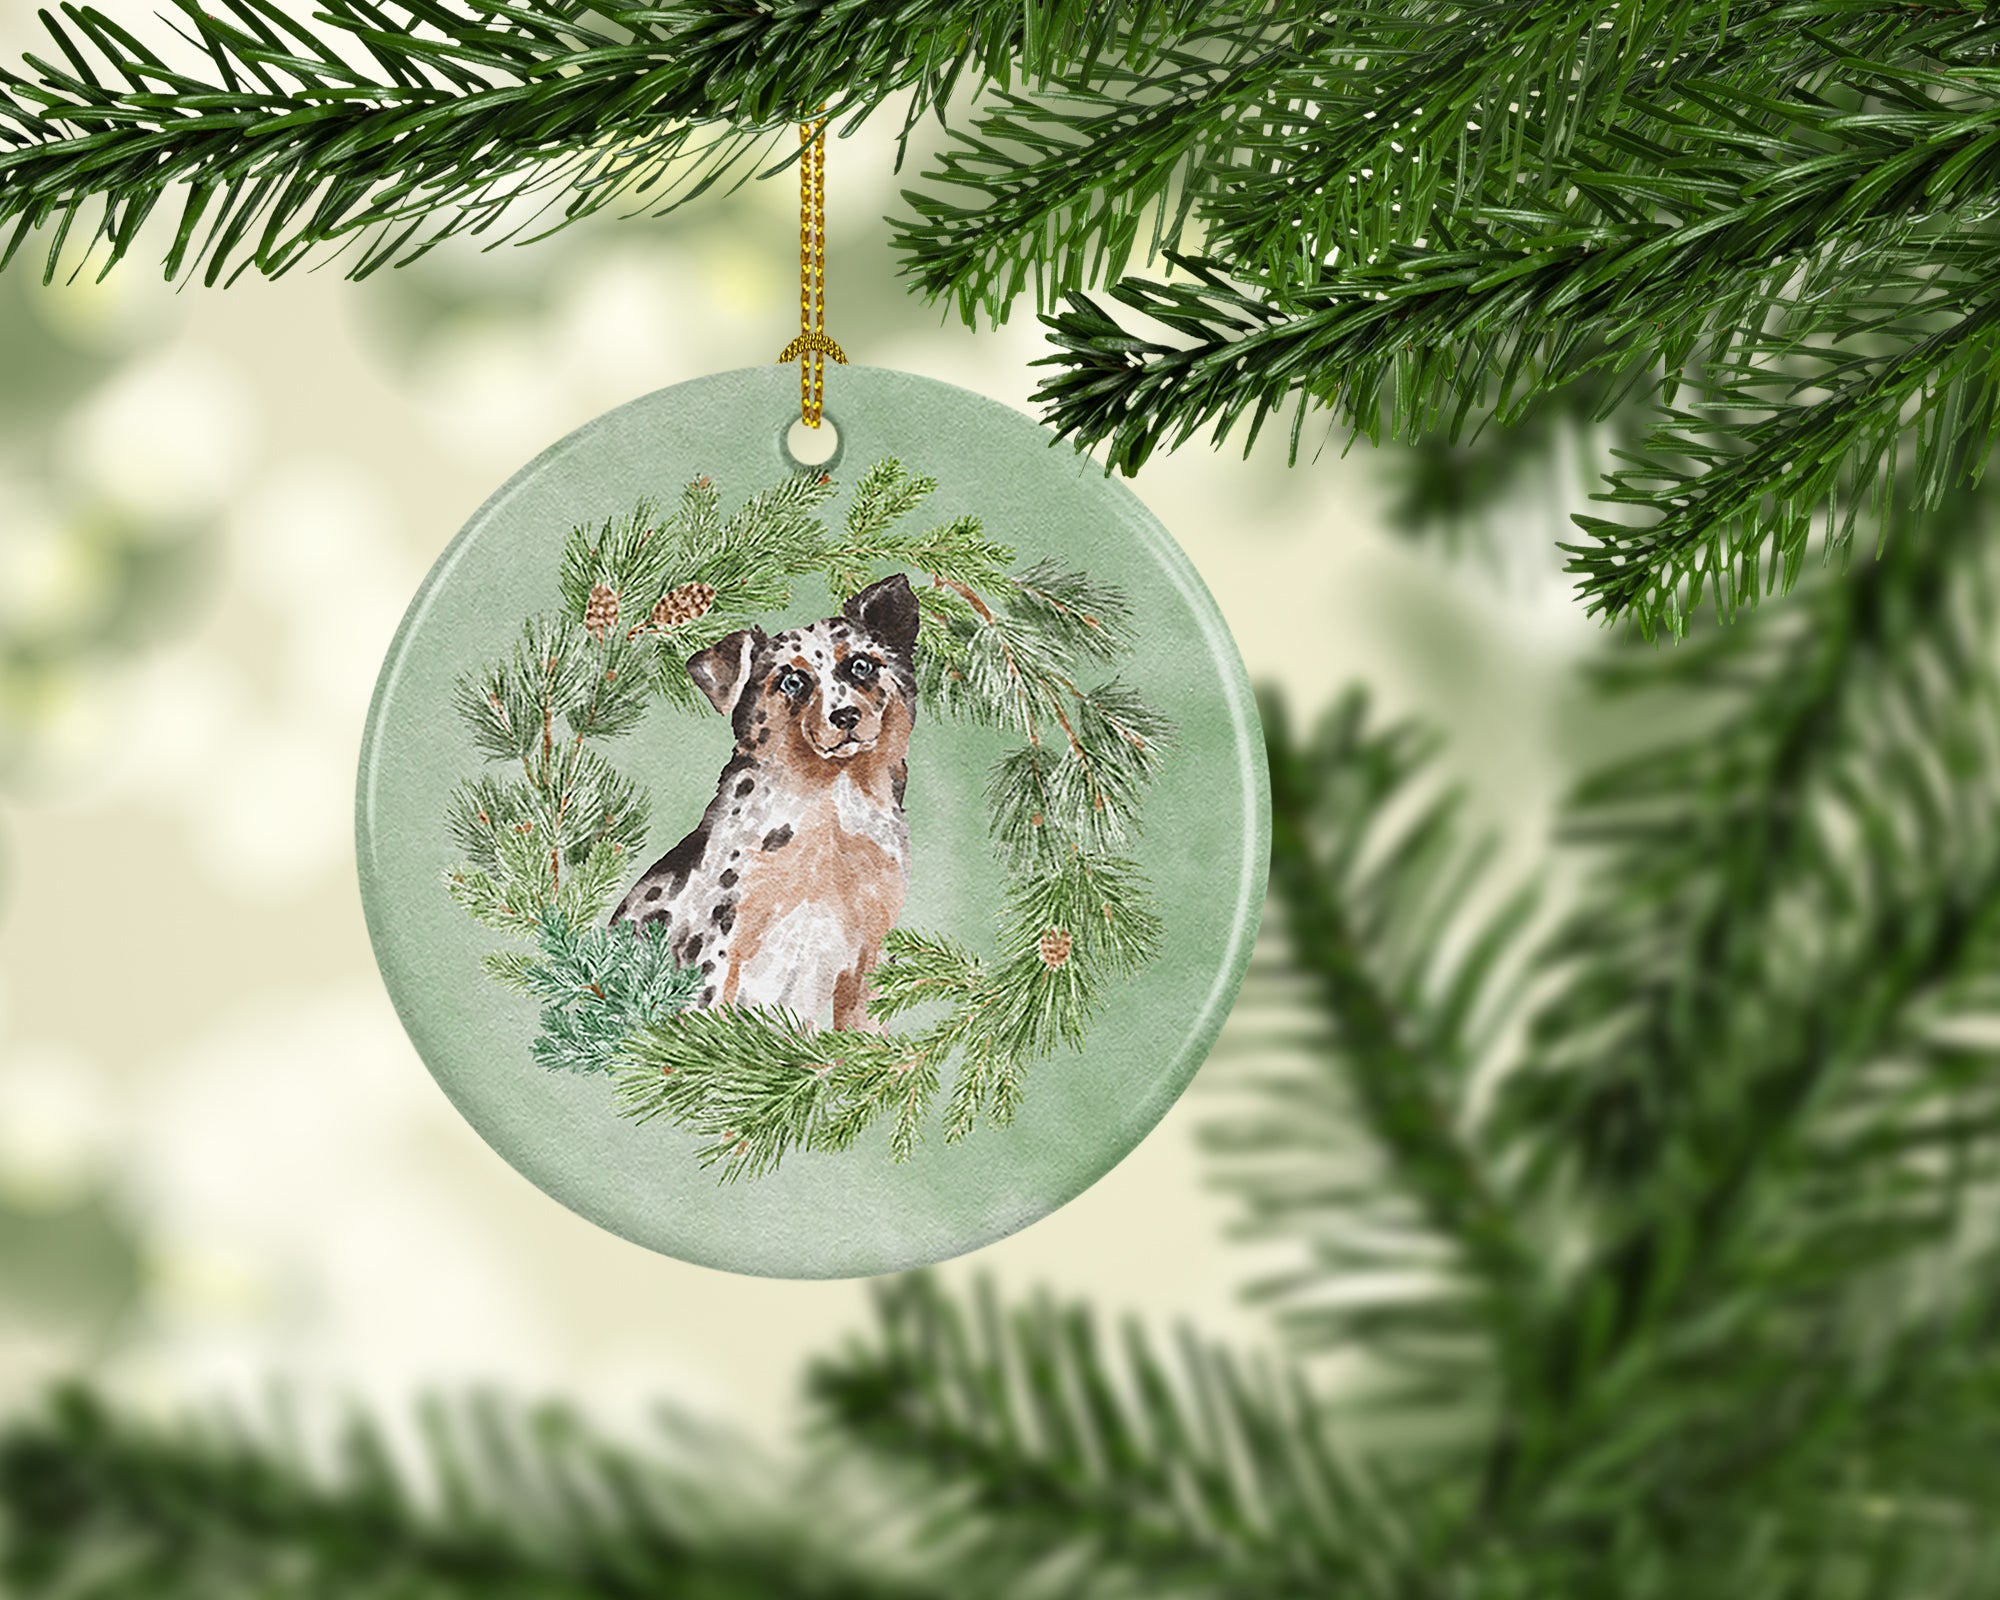 Buy this Australian Shepherd Blue Merle Shorthaired Christmas Wreath Ceramic Ornament